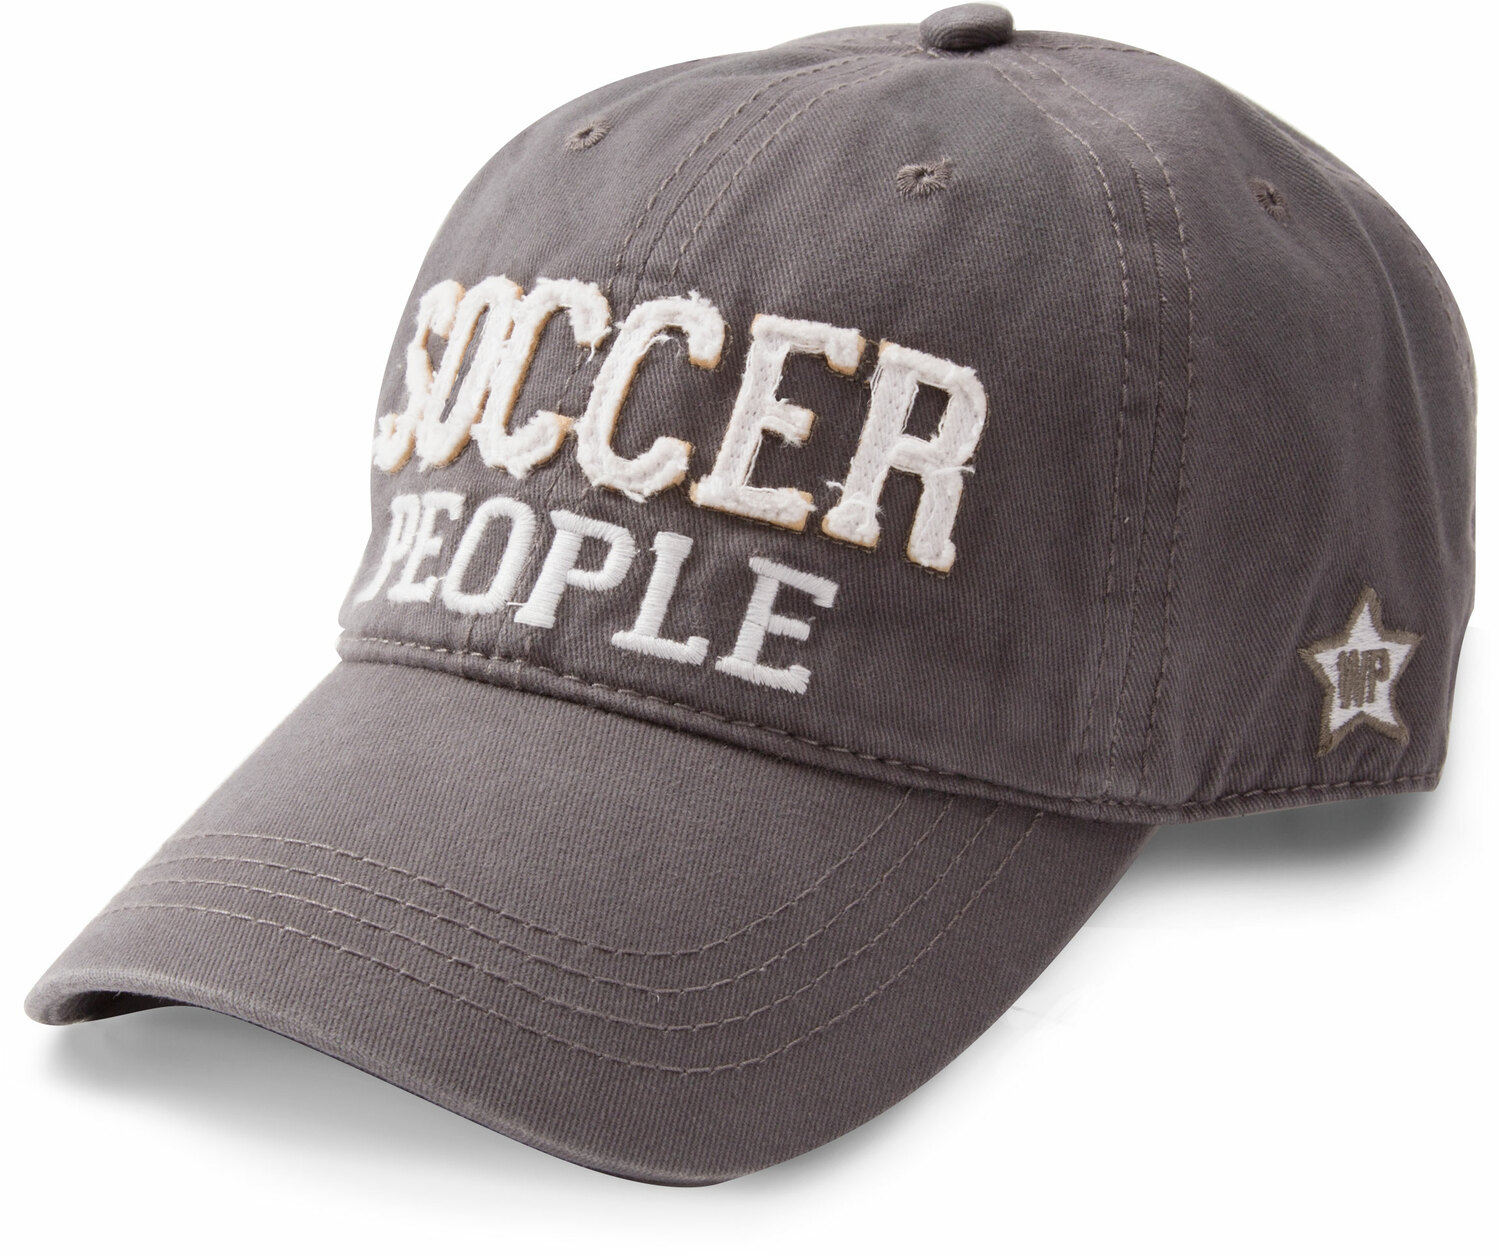 Soccer People by We People - Soccer People - Dark Gray Adjustable Hat